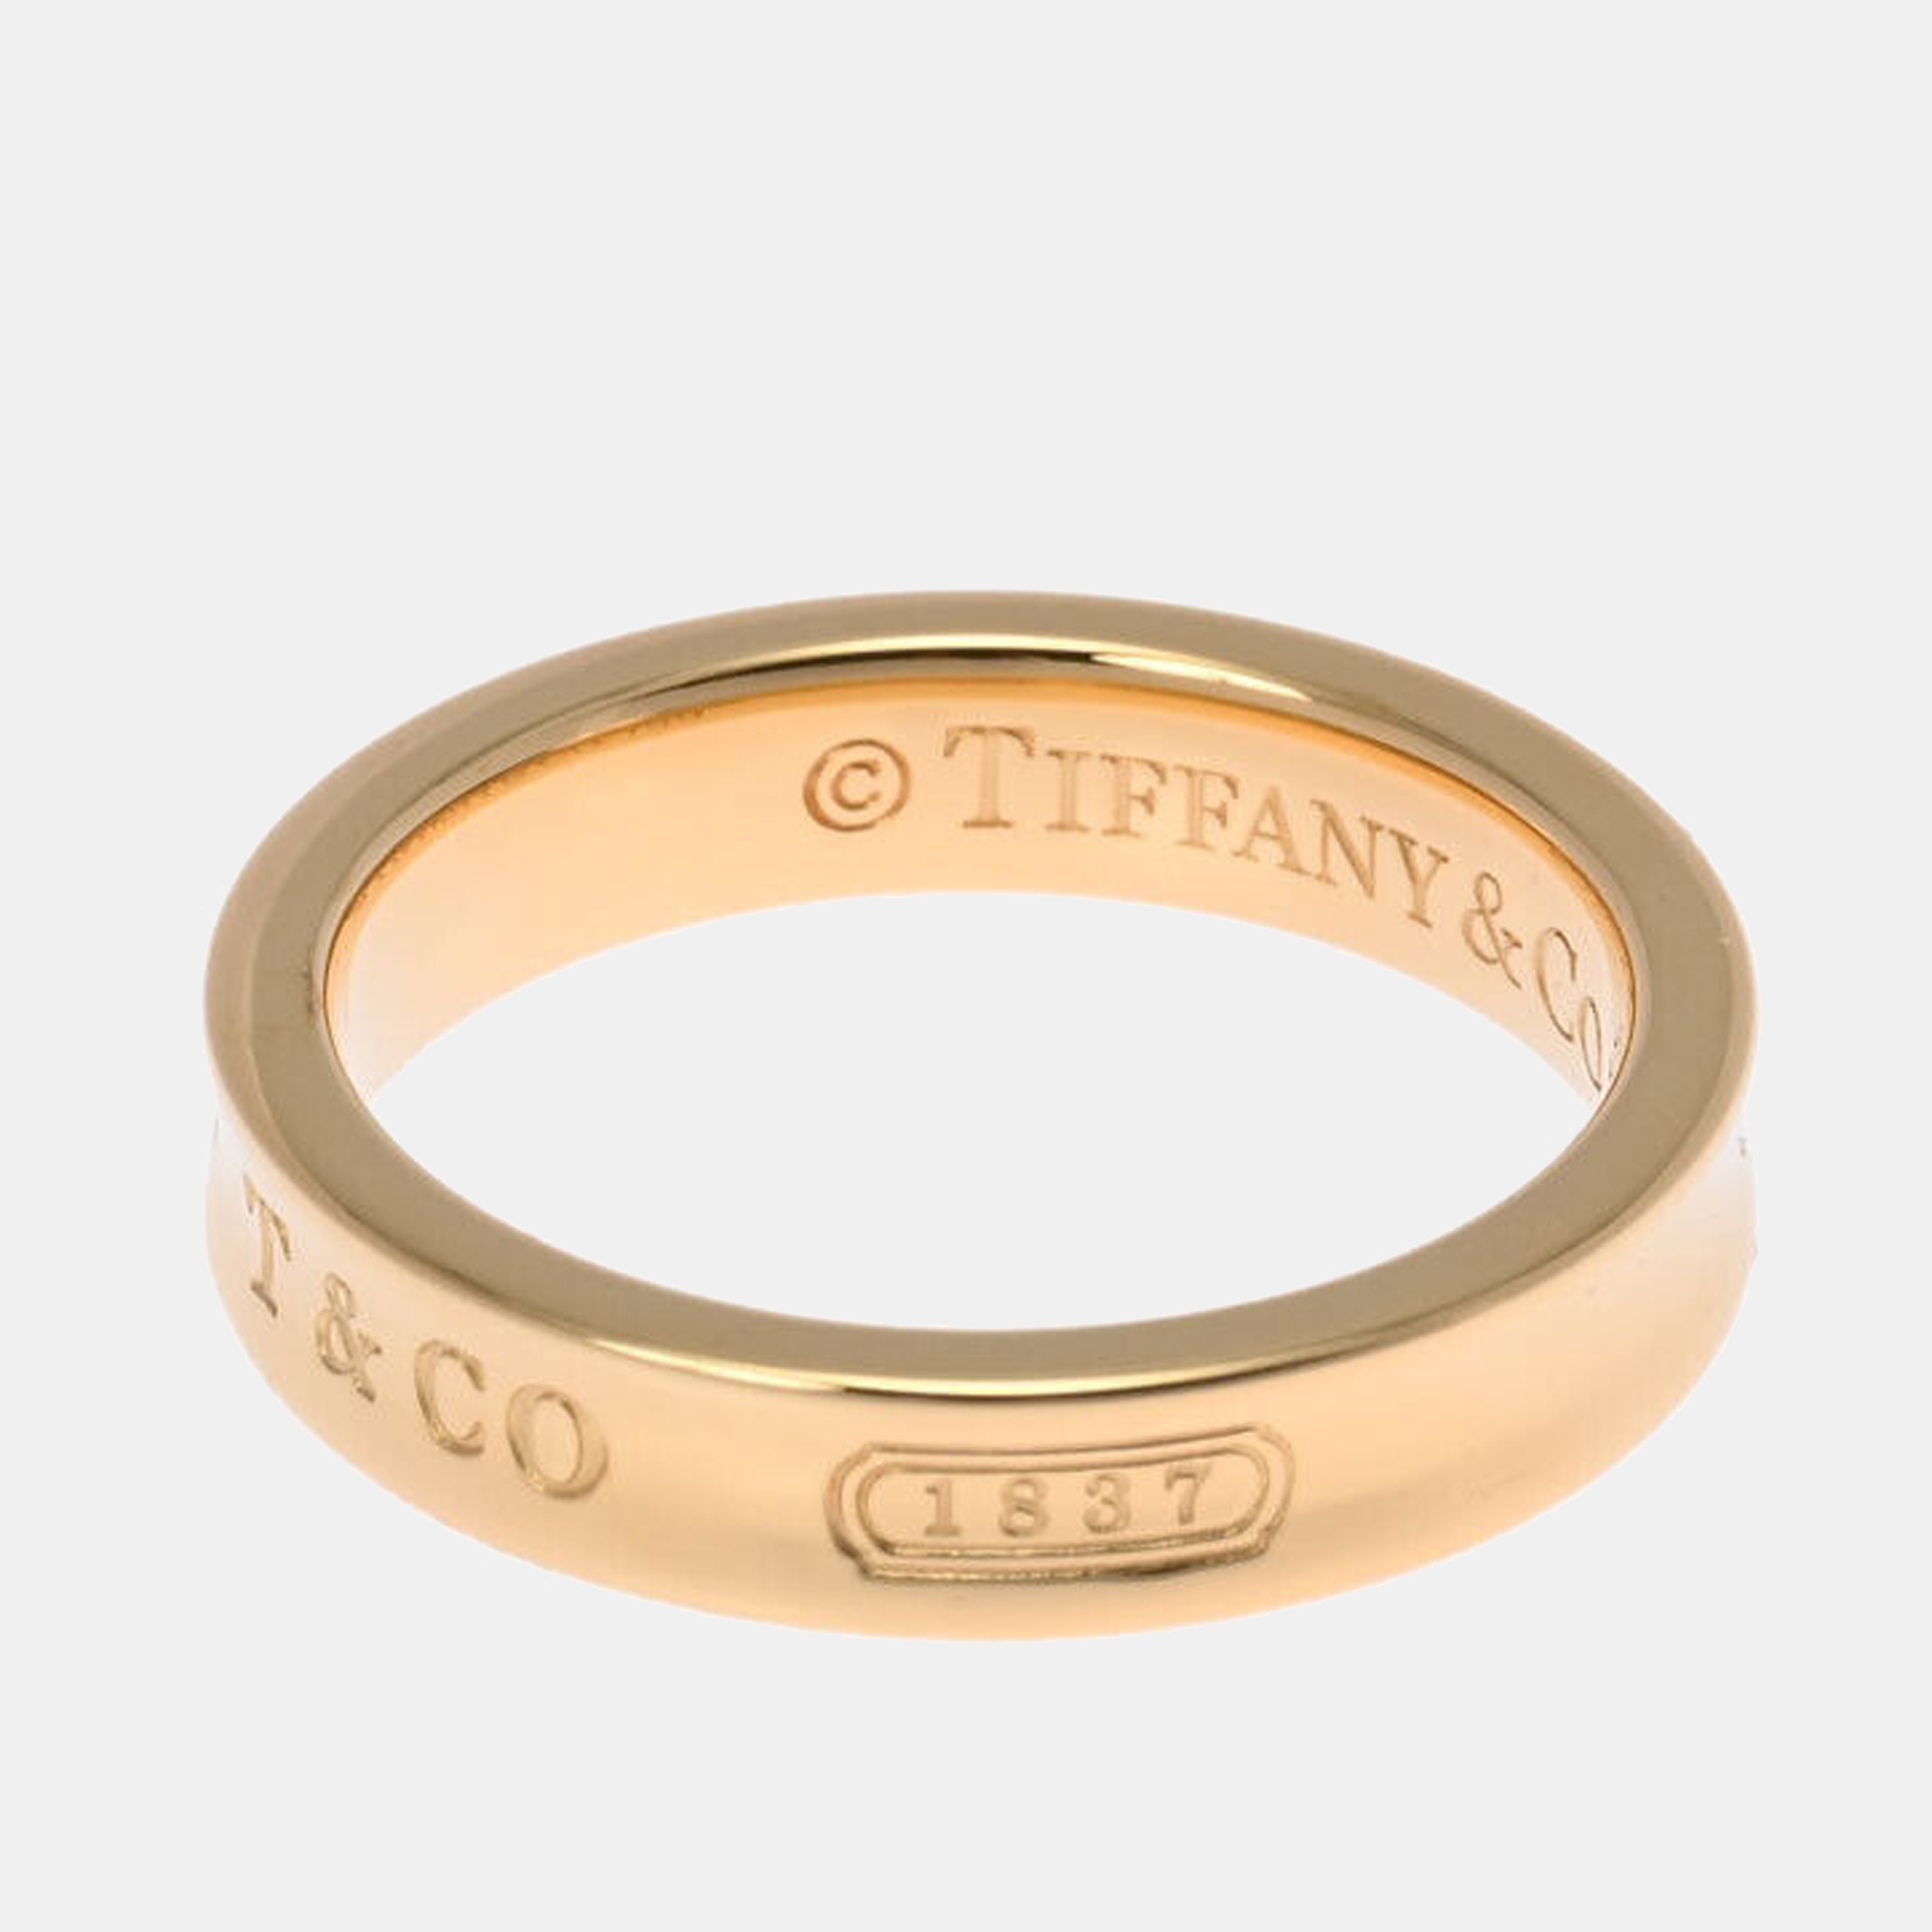 

Tiffany & Co. Tiffany 1837 18K Yellow Gold Ring EU 50